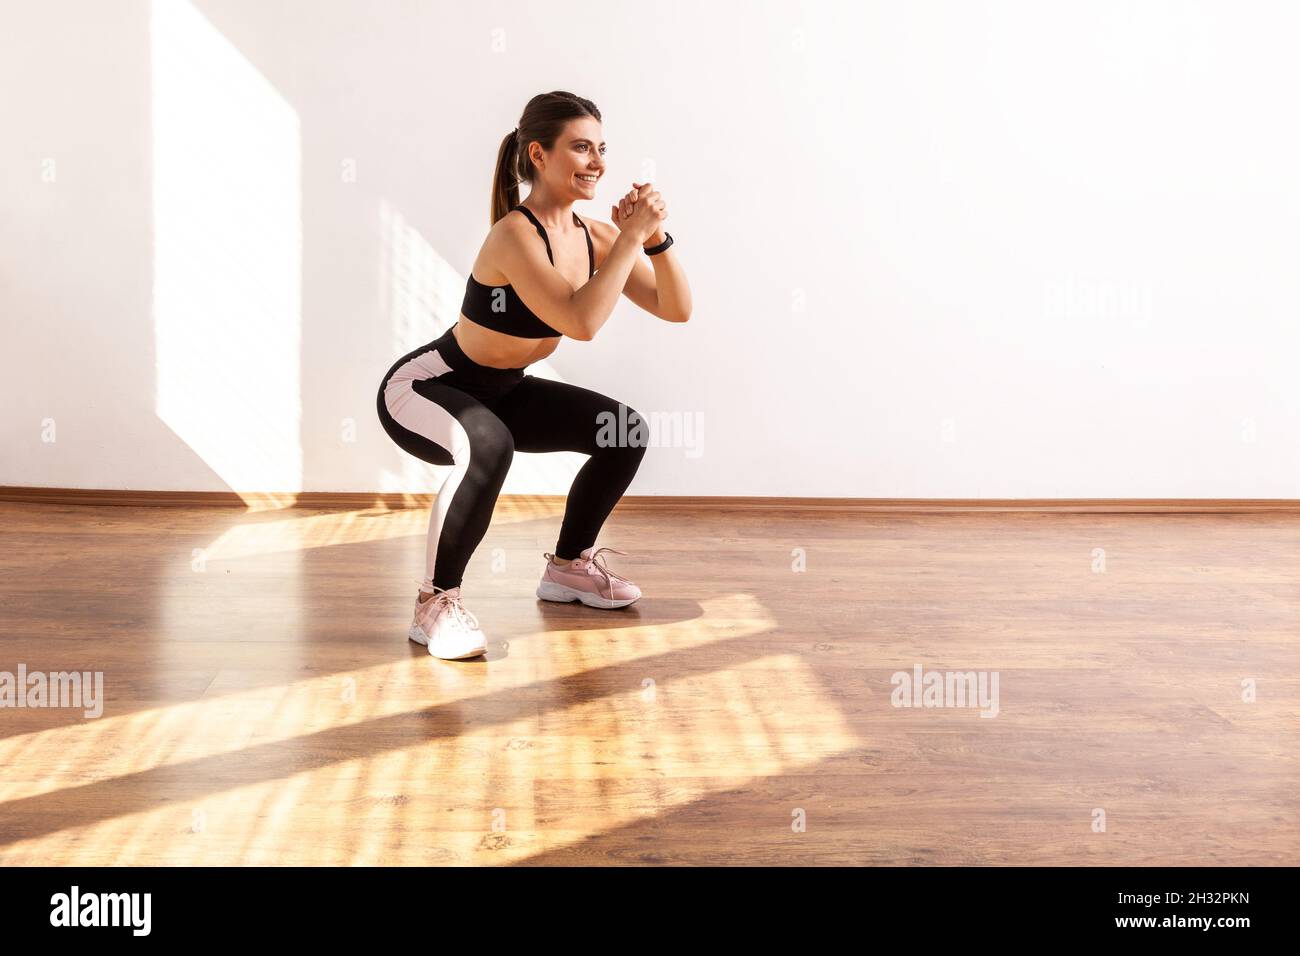 Profil d'une femme sportive qui fait du squat, exercice de sport du bas du  corps, échauffement et muscles d'entraînement, portant un haut de sport  noir et des collants.Prise de vue en studio